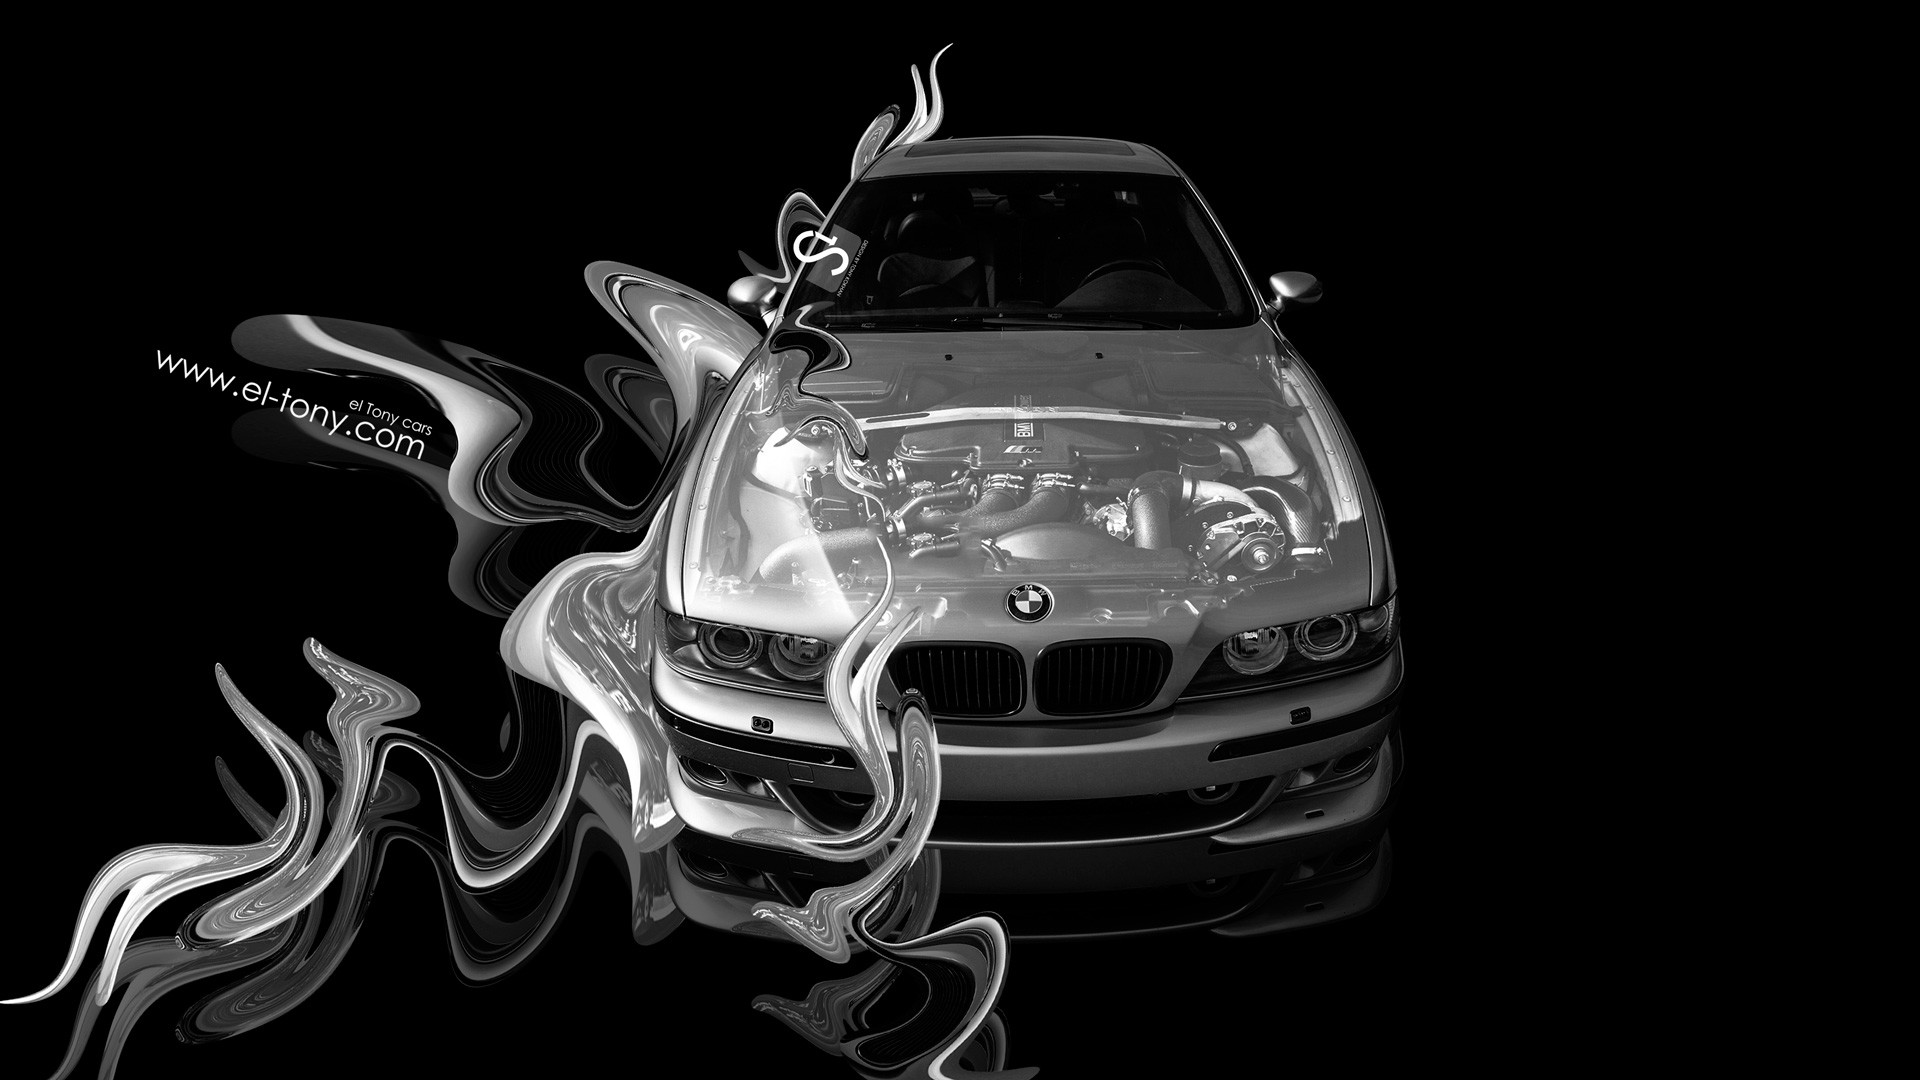 1920x1080 ... BMW-E39-M5-Fantasy-Engine-Plastic-Car-2014- ...